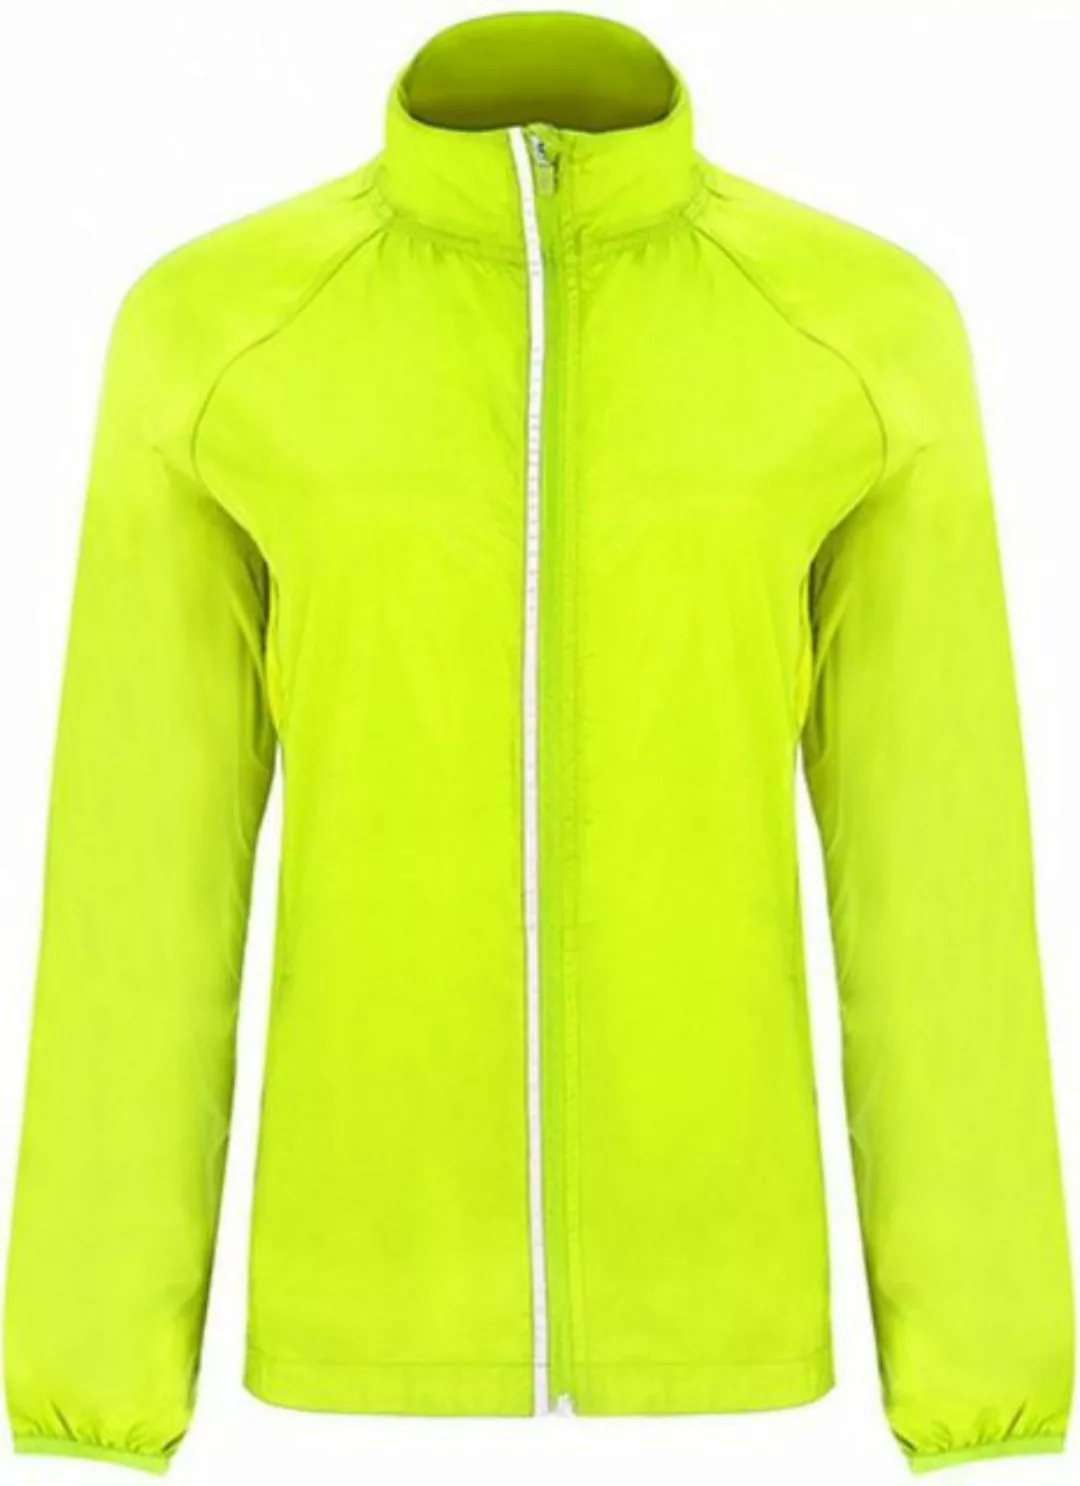 Roly Outdoorjacke Damen Jacke Glasgow Woman Windjacket günstig online kaufen